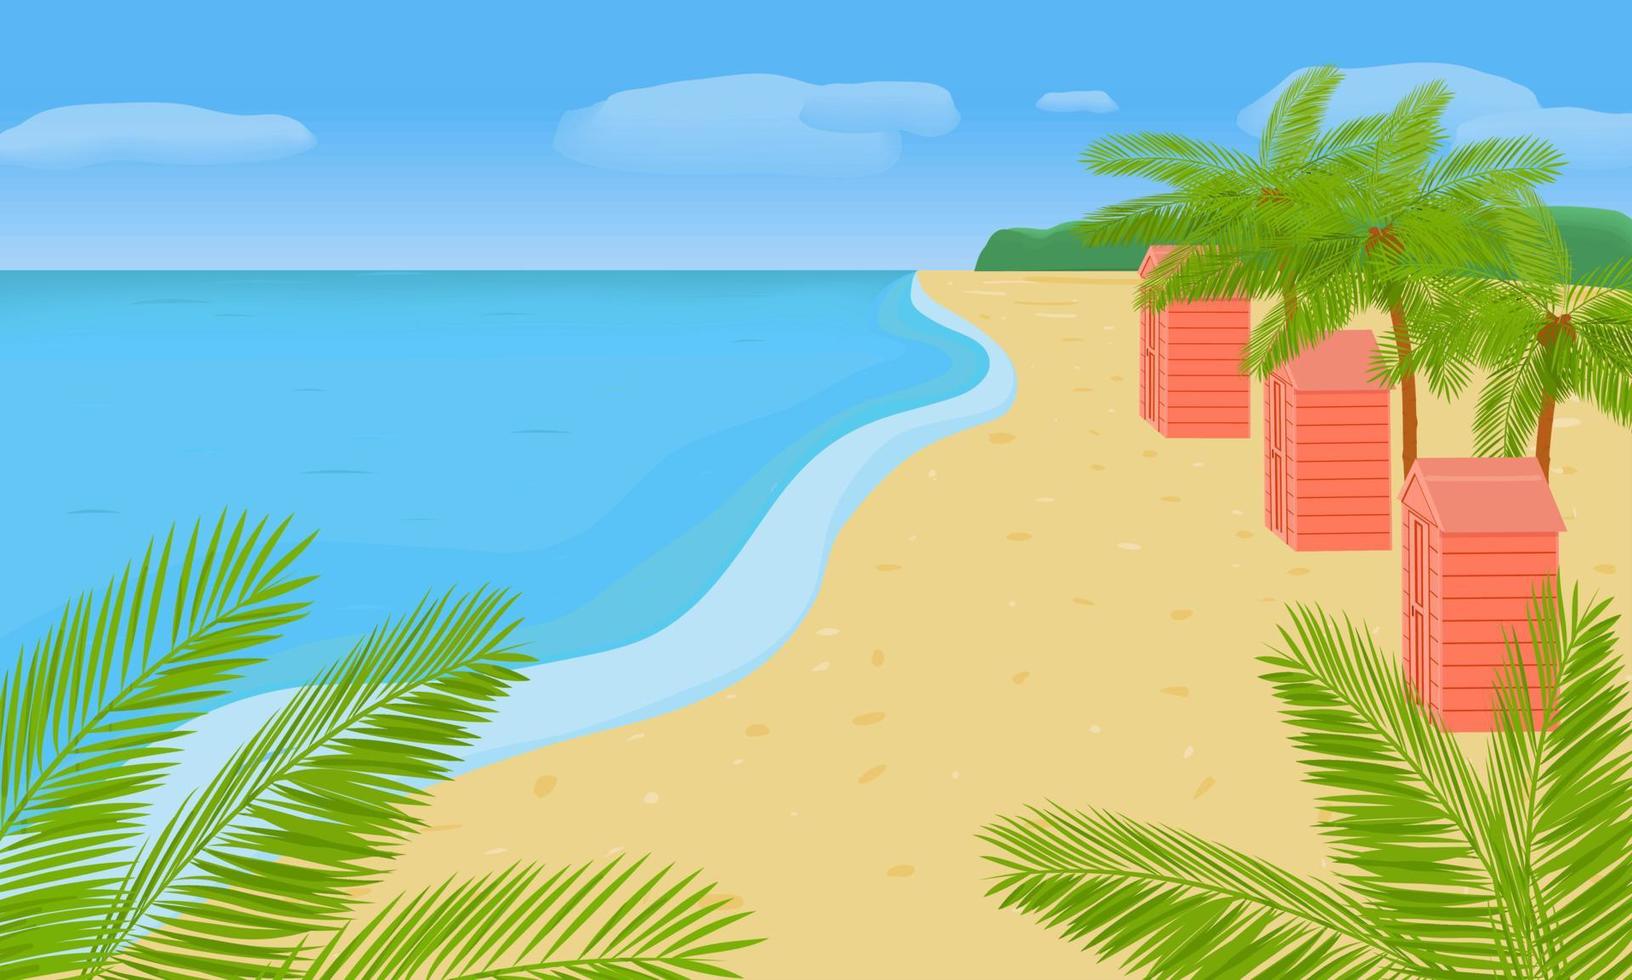 paisaje con la costa del mar, palmeras, casas. ilustración brillante de verano sobre el tema de los viajes y el ocio. vector